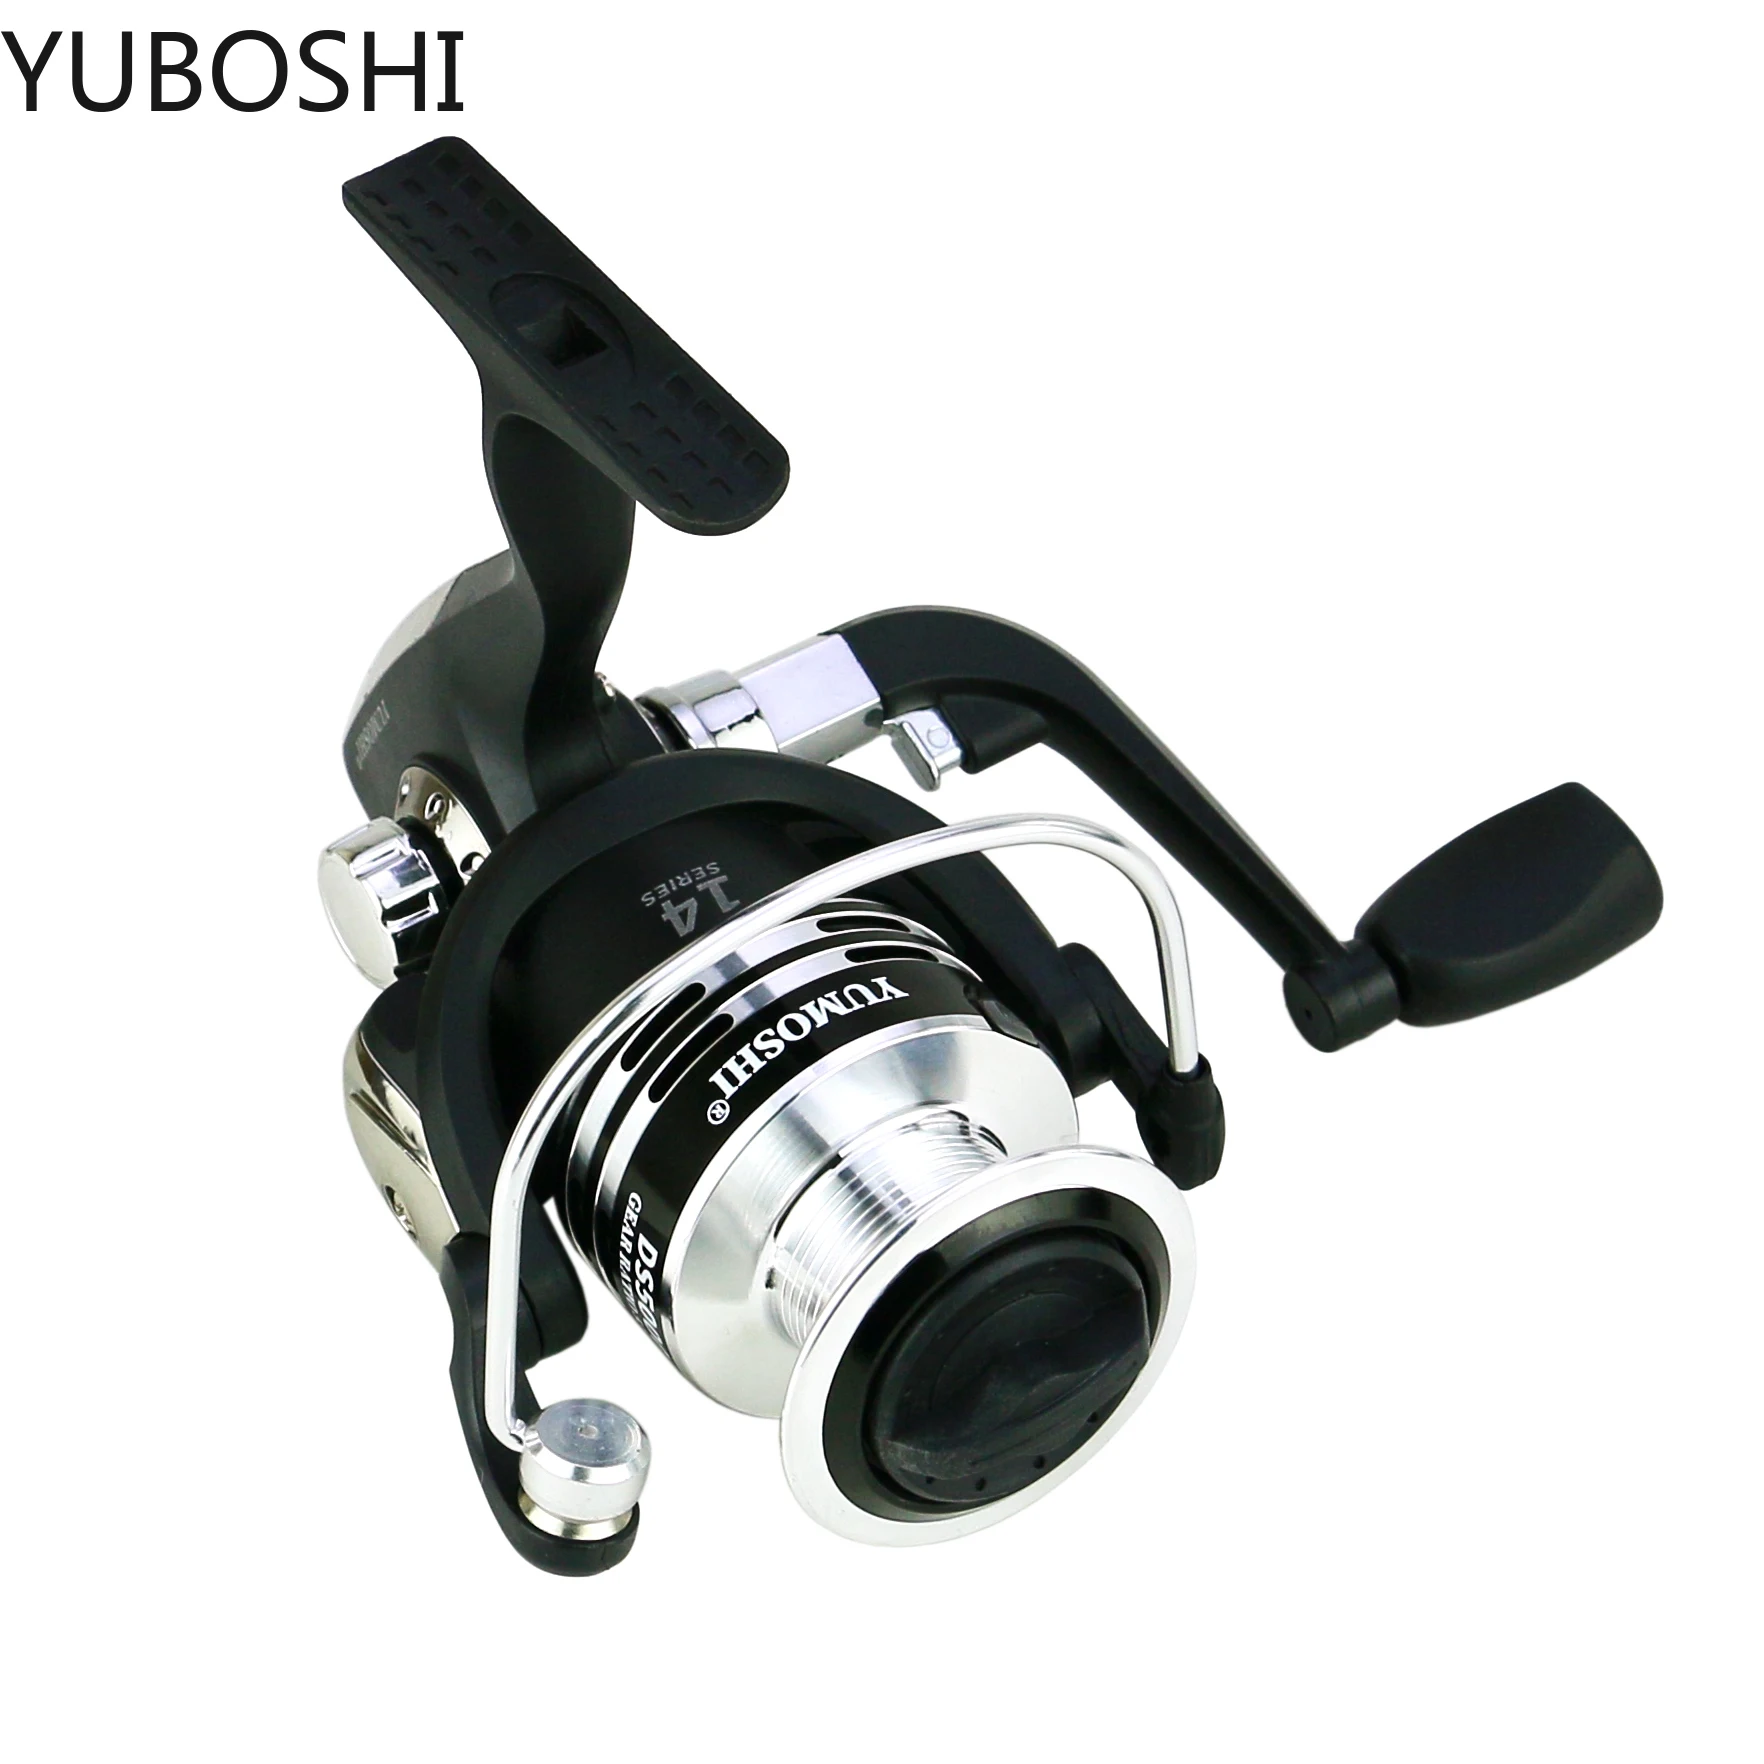 YUBOSHI DS-Series Saltwater/Freshwater Bass Spinning Fishing Wheel 5.5:1 Semi-metal Folding Rocker Fishing Reel enlarge